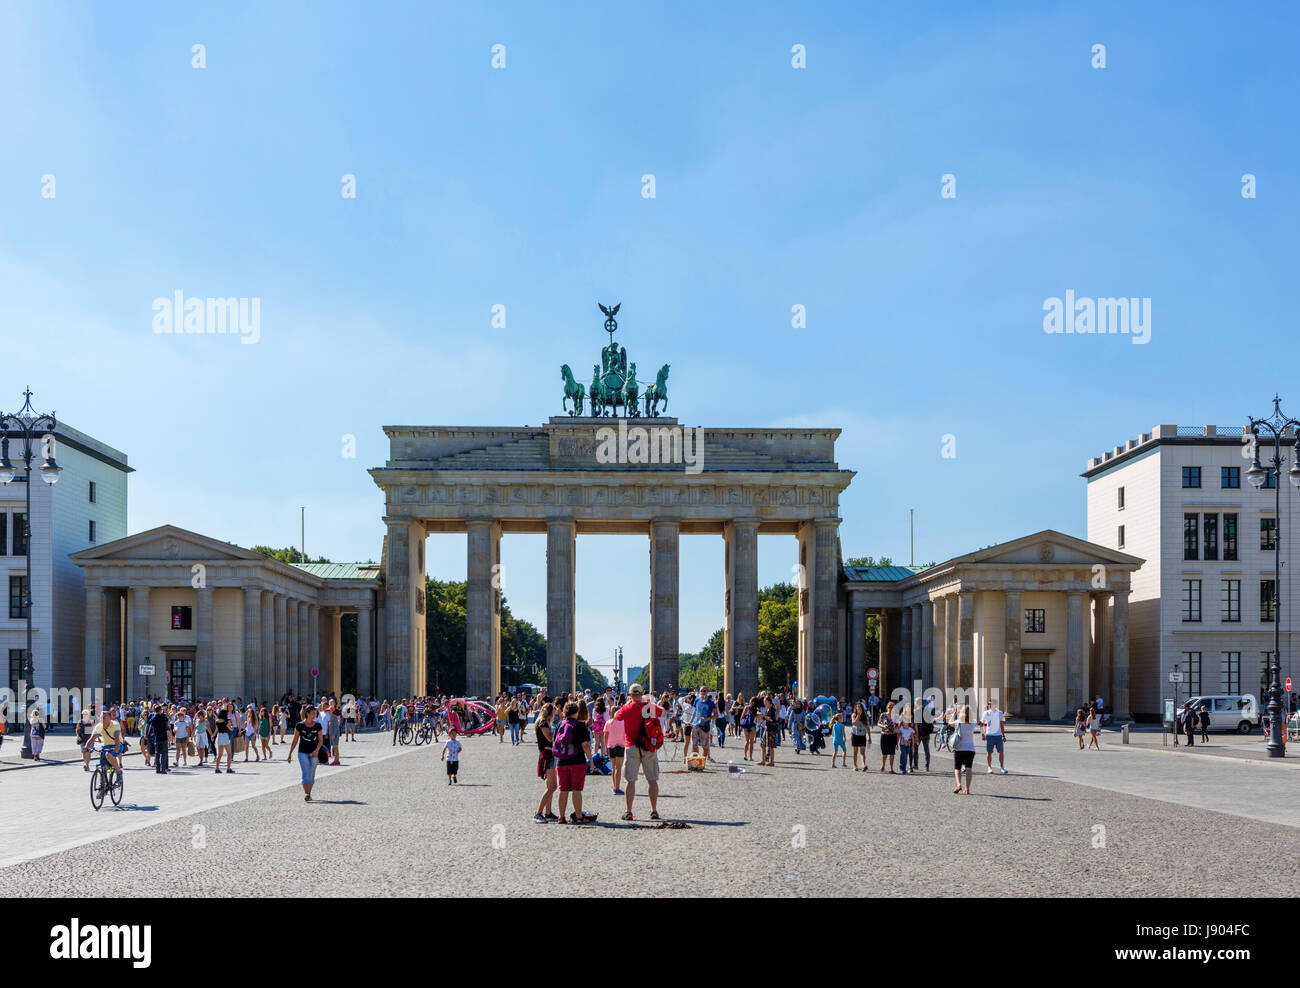 La porte de Brandebourg (Brandenburger Tor) à partir de la Pariser Platz, Mitte, Berlin, Allemagne Banque D'Images